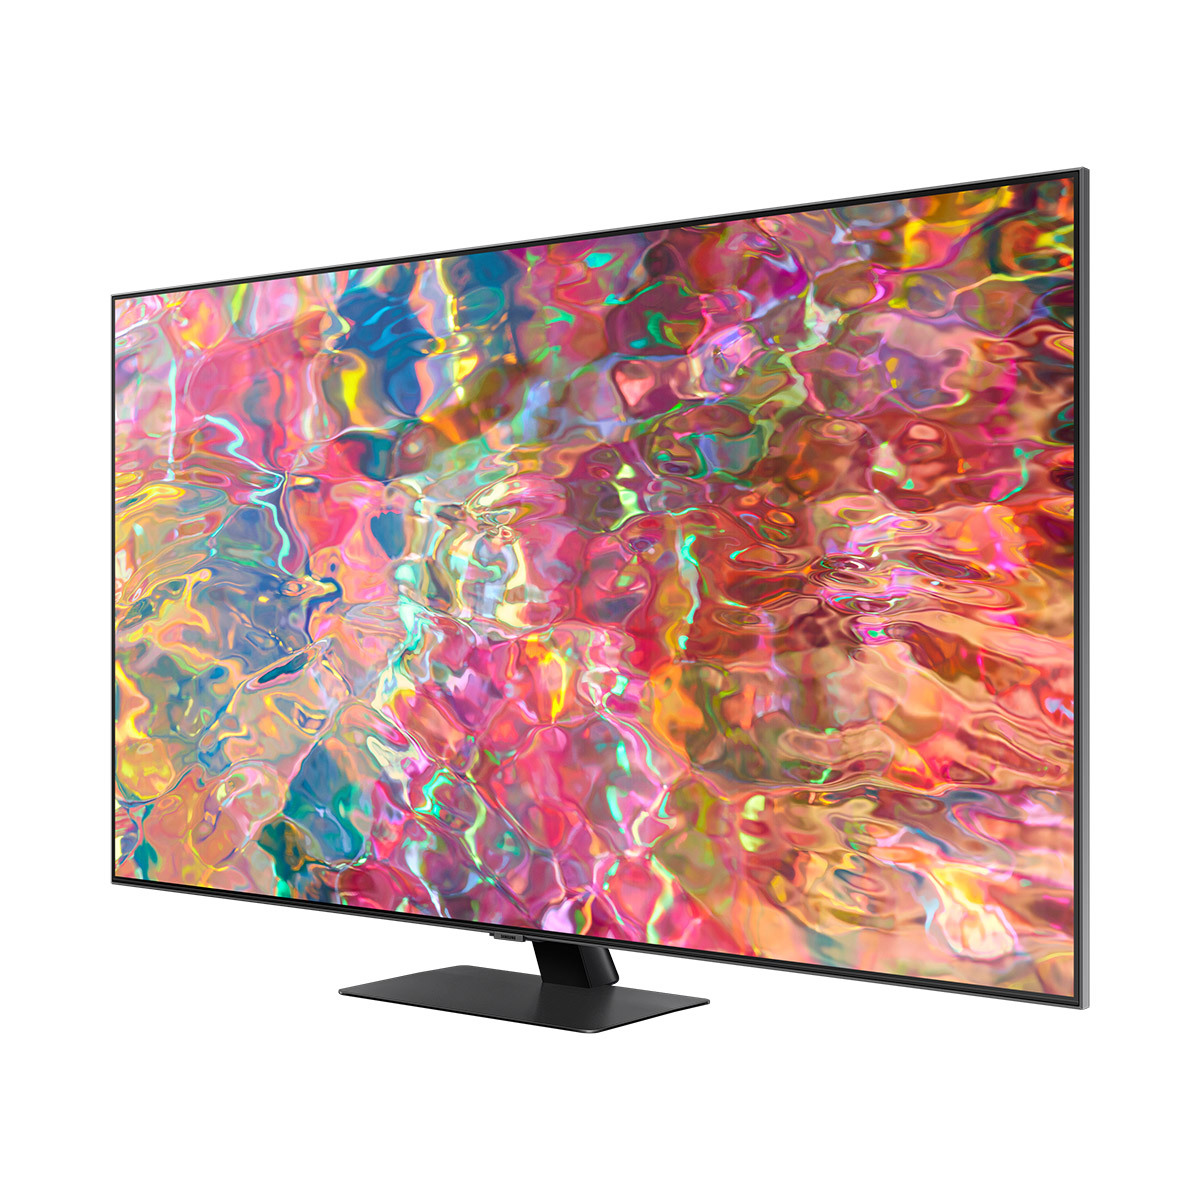 삼성 QLED TV KQ85QB80AFXKR 214cm (85)